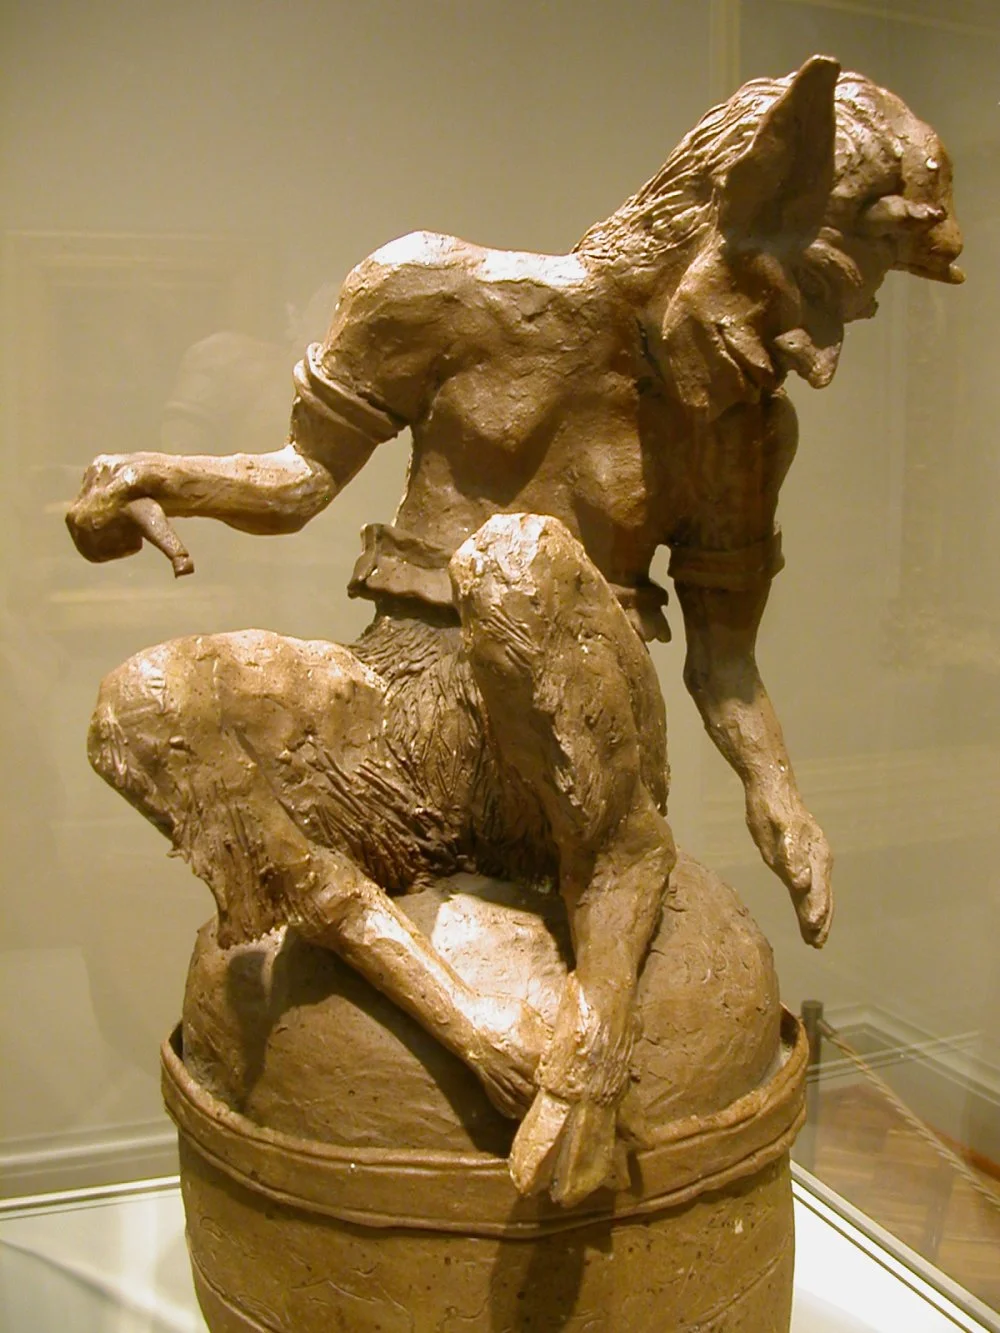 Это изображение скульптуры фавна, ранее выставлявшейся Чикагским институтом искусств и приписываемой Полю Гогену. Недавно выяснилось, что эта скульптура была изготовлена Шоном Гринхолшом/Wikimedia commons